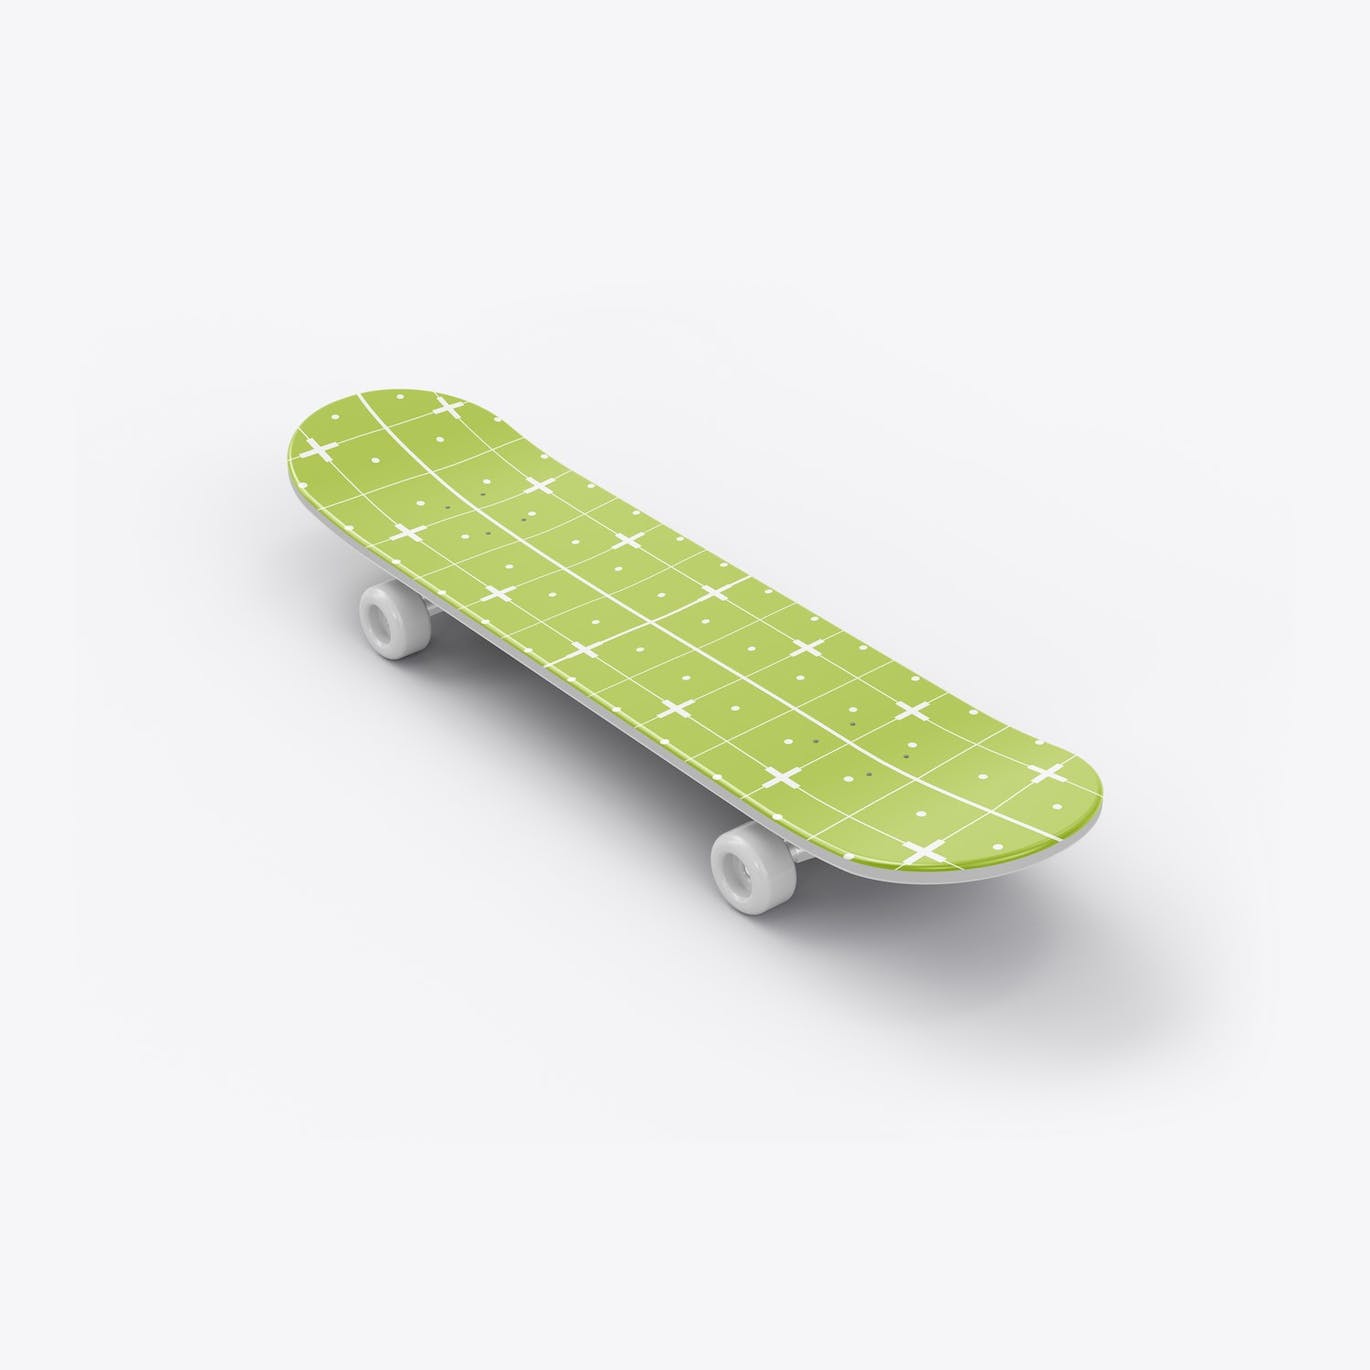 骑行滑板品牌设计样机 Skateboard Mockup 样机素材 第12张